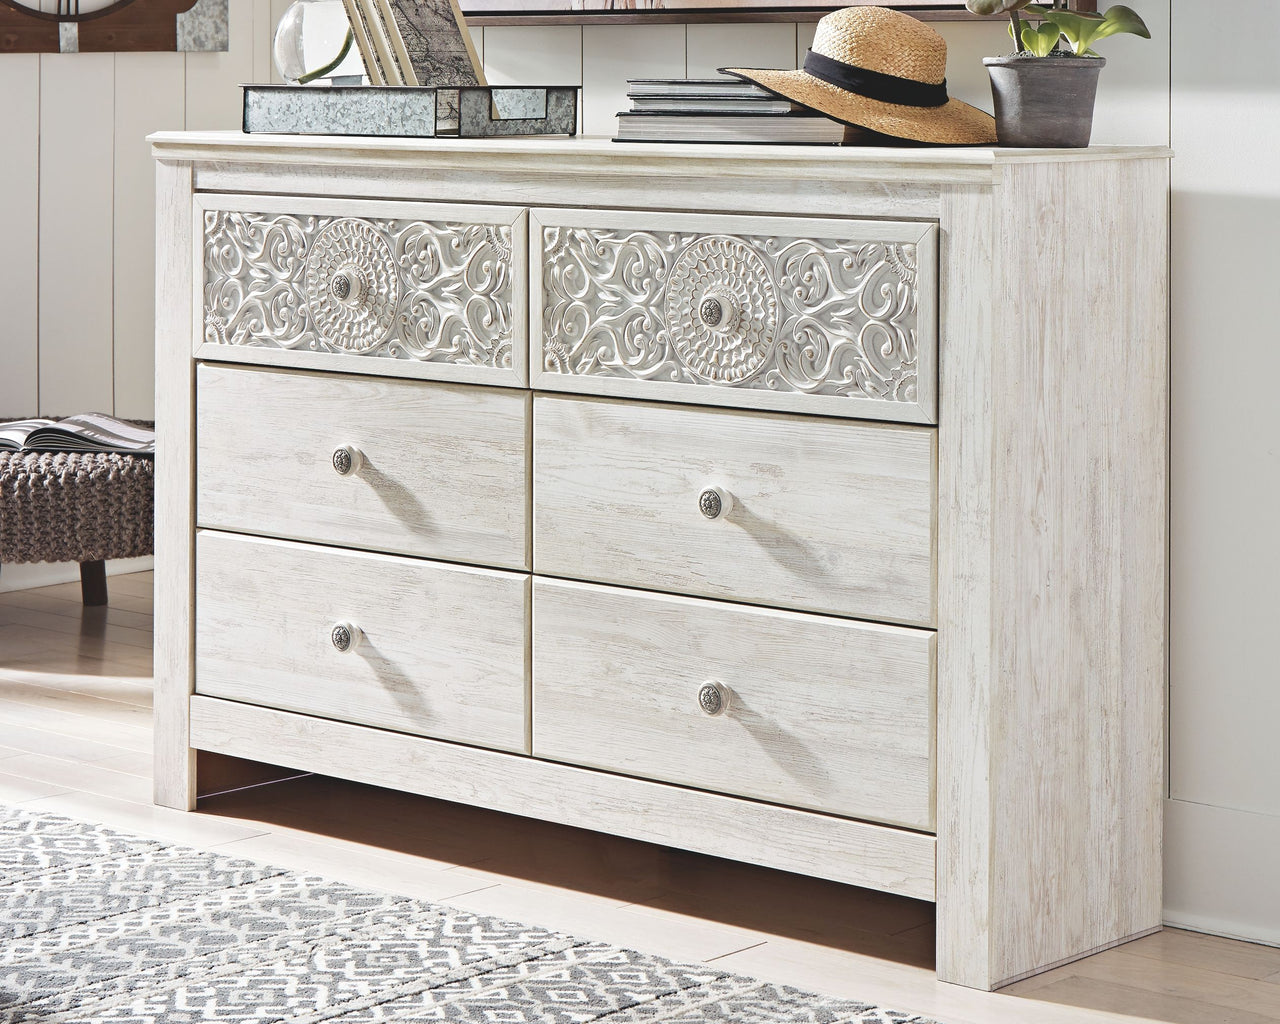 Paxberry - Whitewash - Dresser, Mirror - Medallion Drawer Pulls Signature Design by Ashley® 